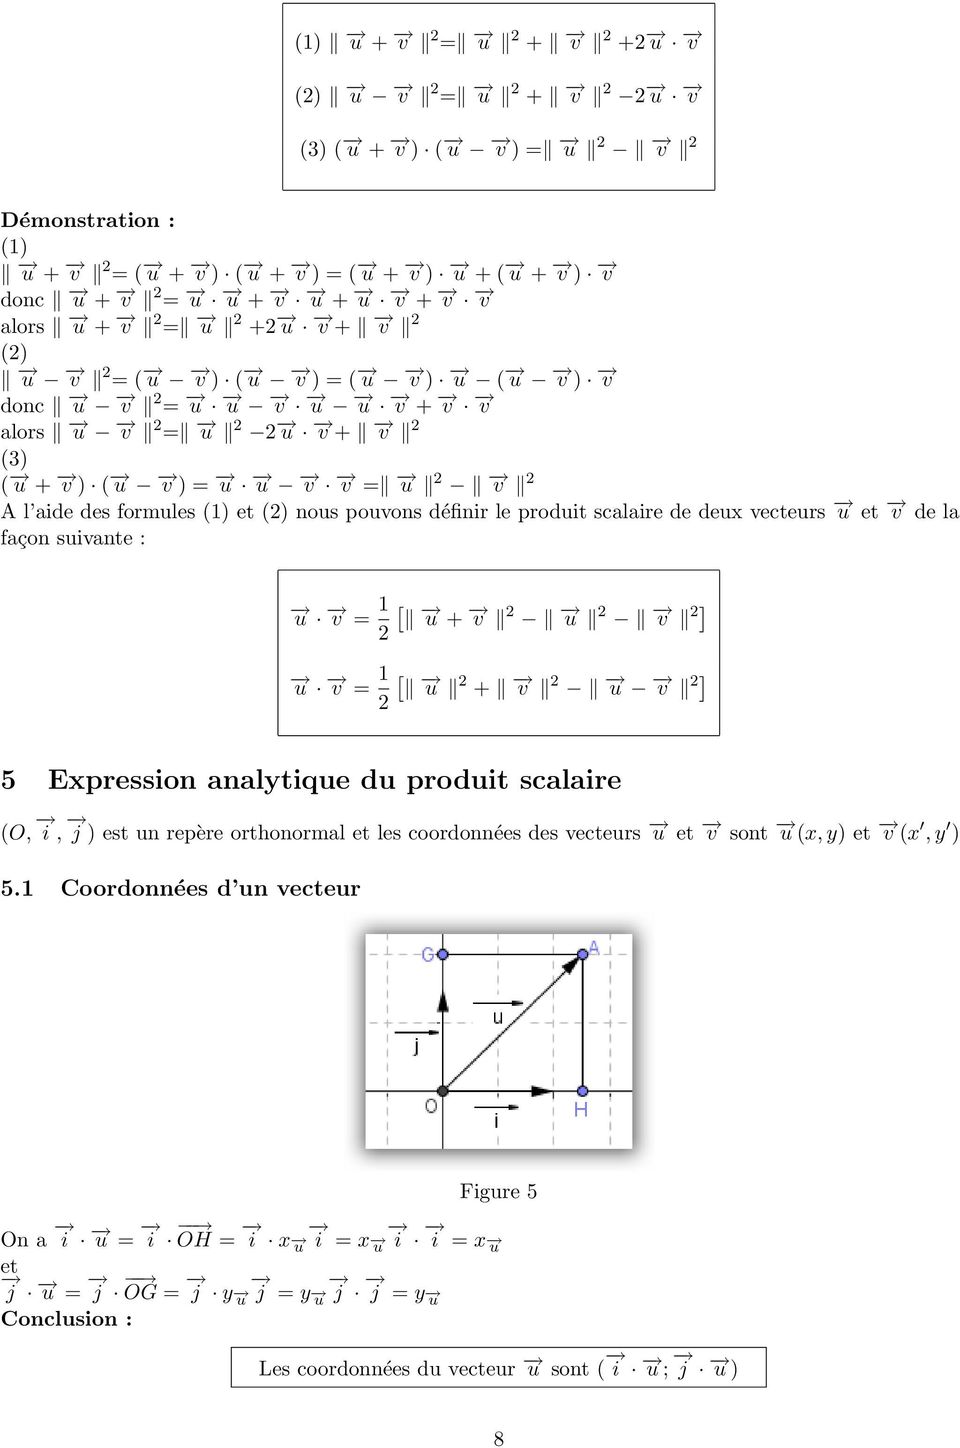 scalaire de deux vecteurs u et v de la façon suivante : u 1 [ v = u + v u v ] u 1 [ v = u + v u v ] 5 Expression analytique du produit scalaire (O, i, j ) est un repère orthonormal et les coordonnées